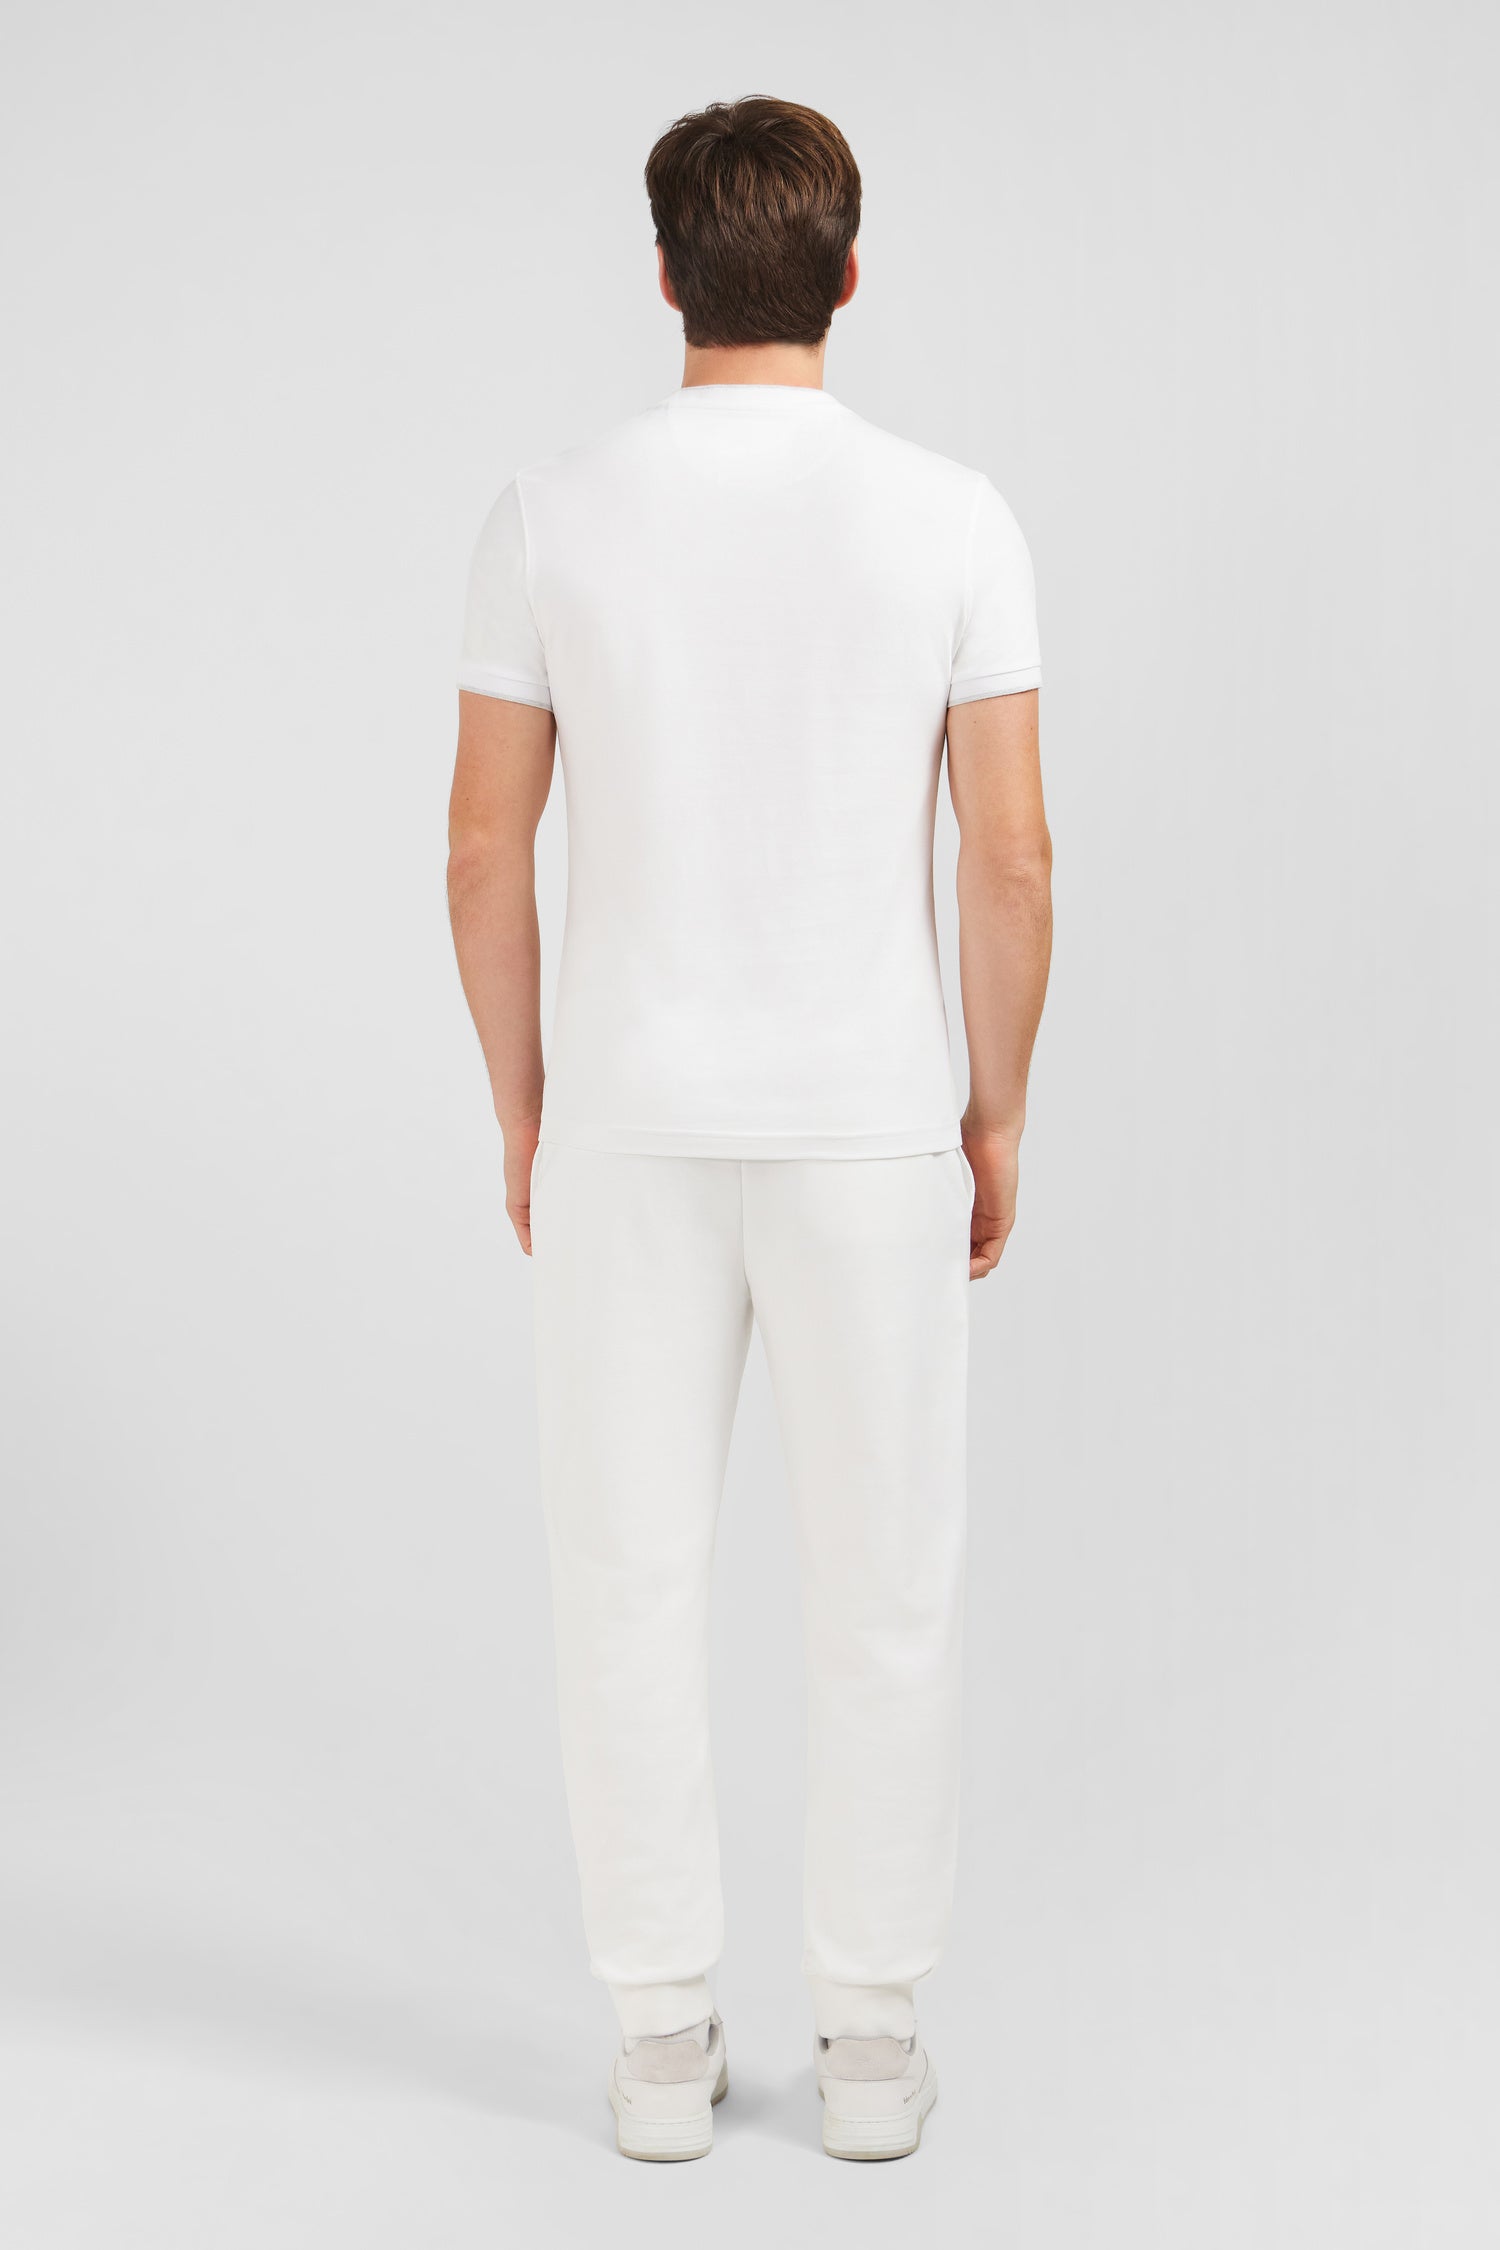 T-shirt blanc uni à manches courtes